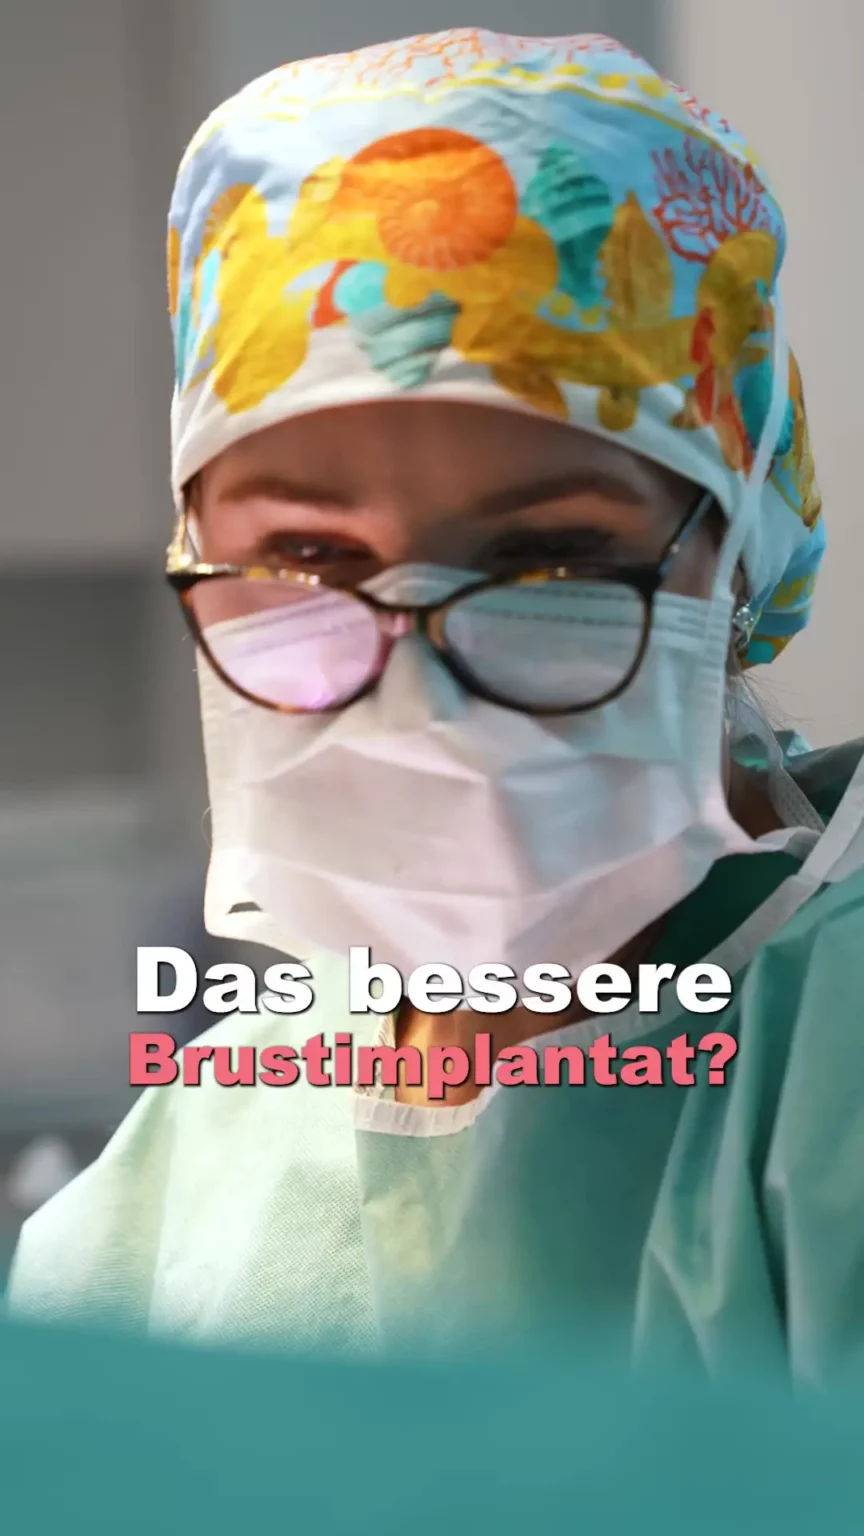 Aufnahme von Dr. Berkei im OP mit dem Text "Das bessere Brustimplantate?".